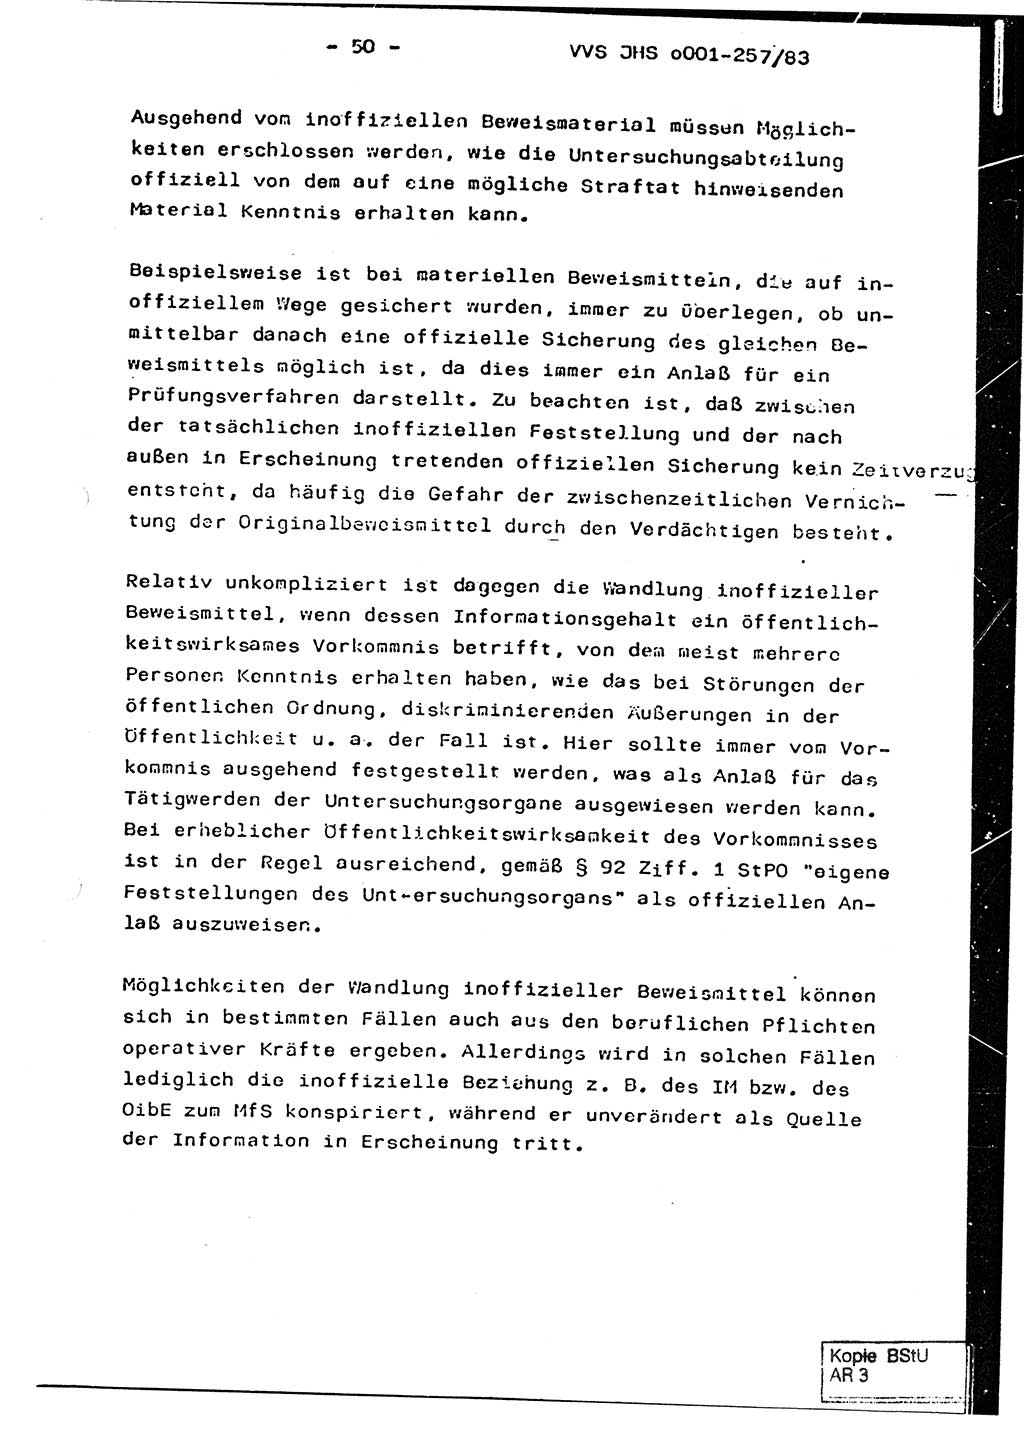 Dissertation, Oberst Helmut Lubas (BV Mdg.), Oberstleutnant Manfred Eschberger (HA IX), Oberleutnant Hans-Jürgen Ludwig (JHS), Ministerium für Staatssicherheit (MfS) [Deutsche Demokratische Republik (DDR)], Juristische Hochschule (JHS), Vertrauliche Verschlußsache (VVS) o001-257/83, Potsdam 1983, Seite 50 (Diss. MfS DDR JHS VVS o001-257/83 1983, S. 50)